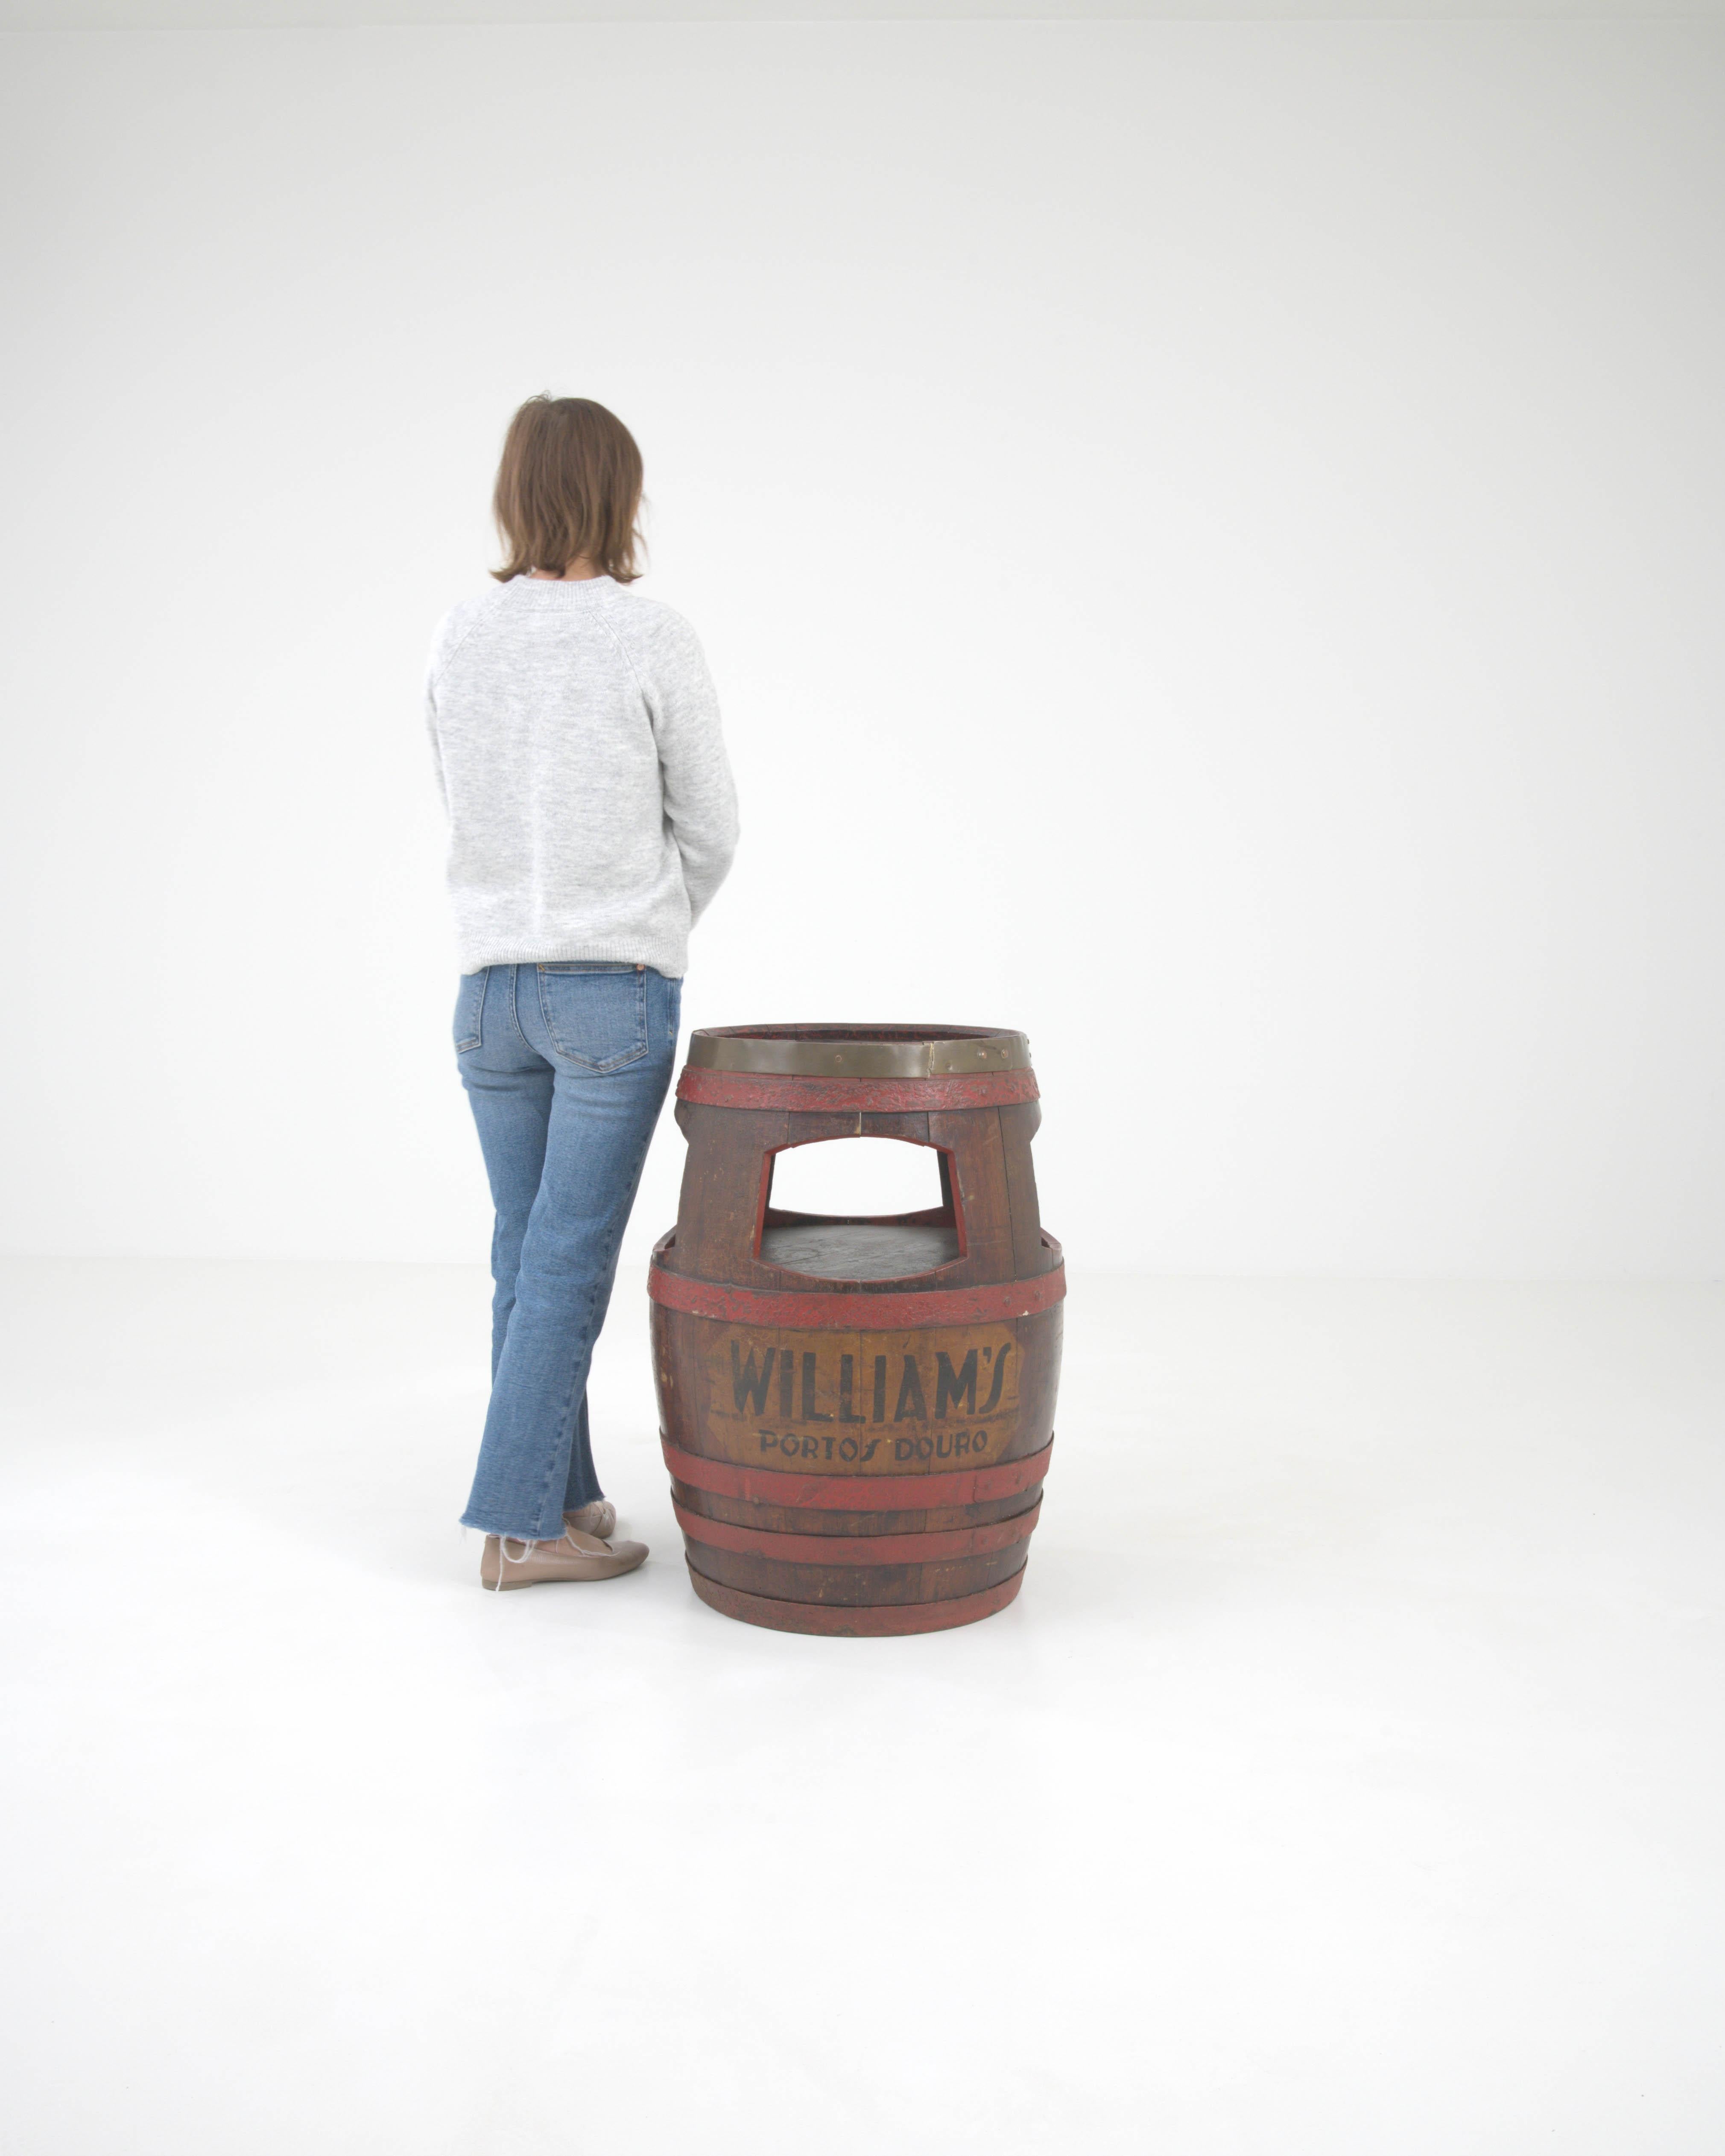 Dieser portugiesische Beistelltisch aus Holzfässern aus dem frühen 20. Jahrhundert ist ein einzigartiges Zeugnis des reichen Weinerbes des Douro-Tals. Das Fass, das ursprünglich für die Reifung des berühmten 